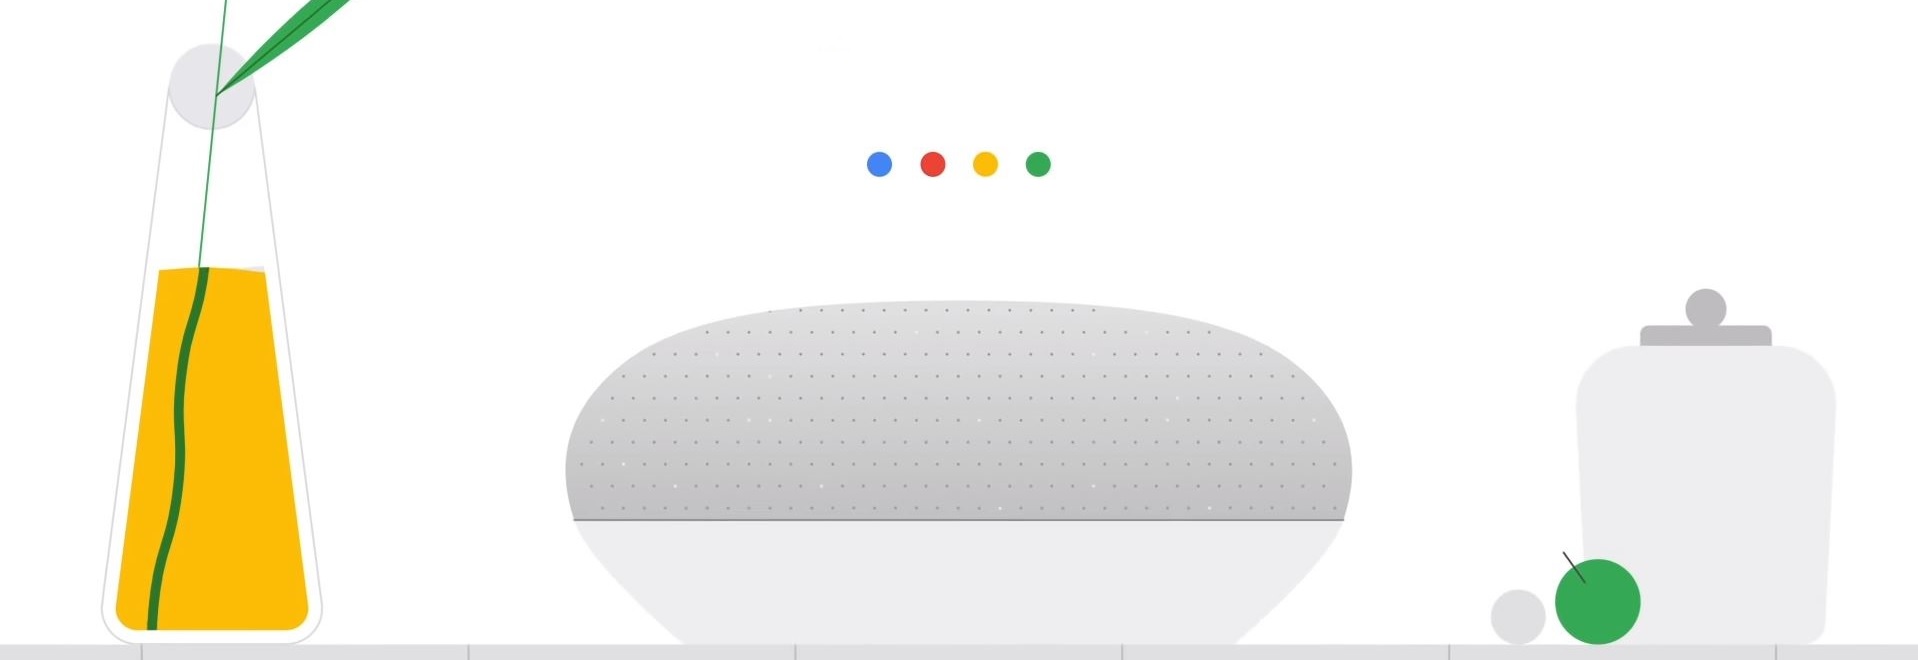 Google Menambahkan Rumah Baru dan Fitur Privasi ke Asisten Suara